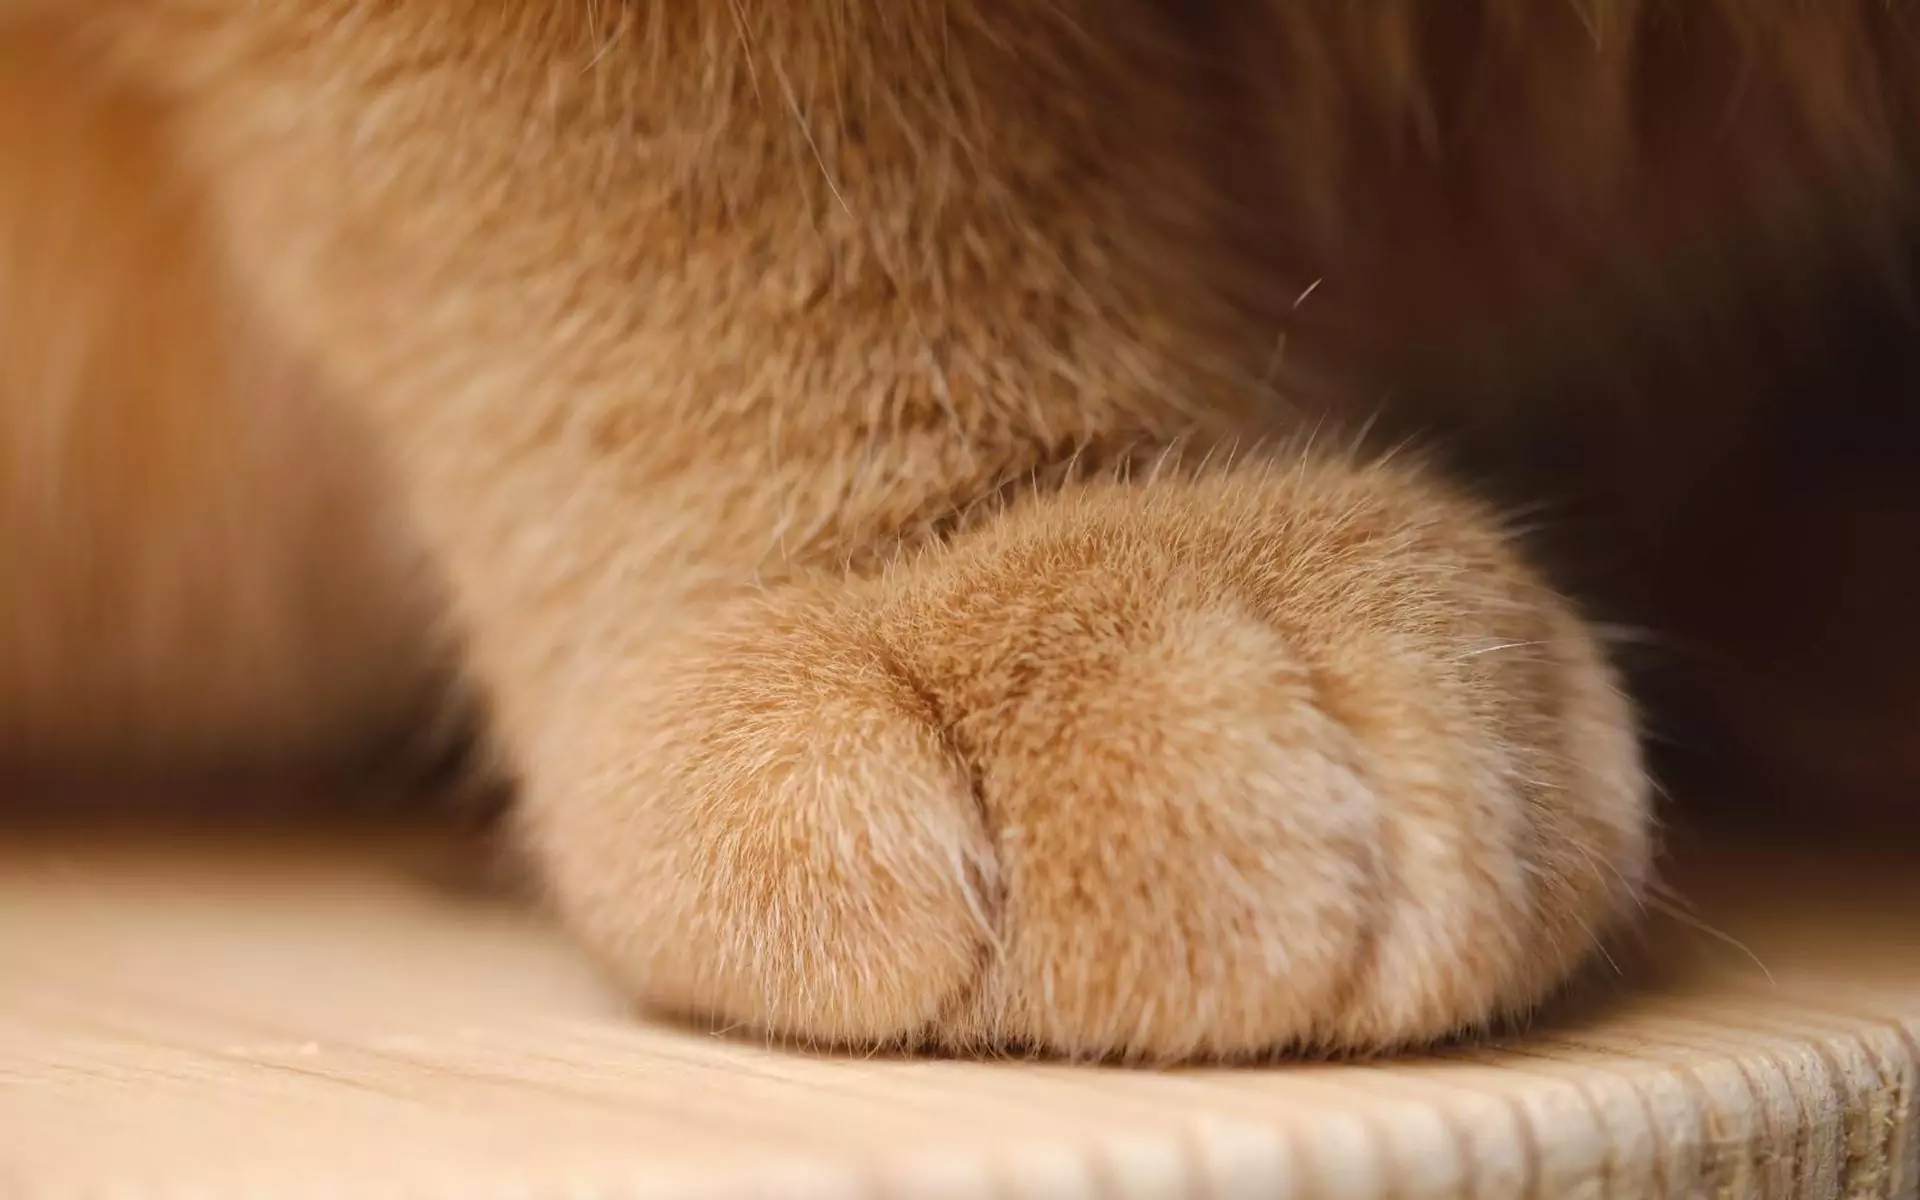 Quante dita ha un gatto?